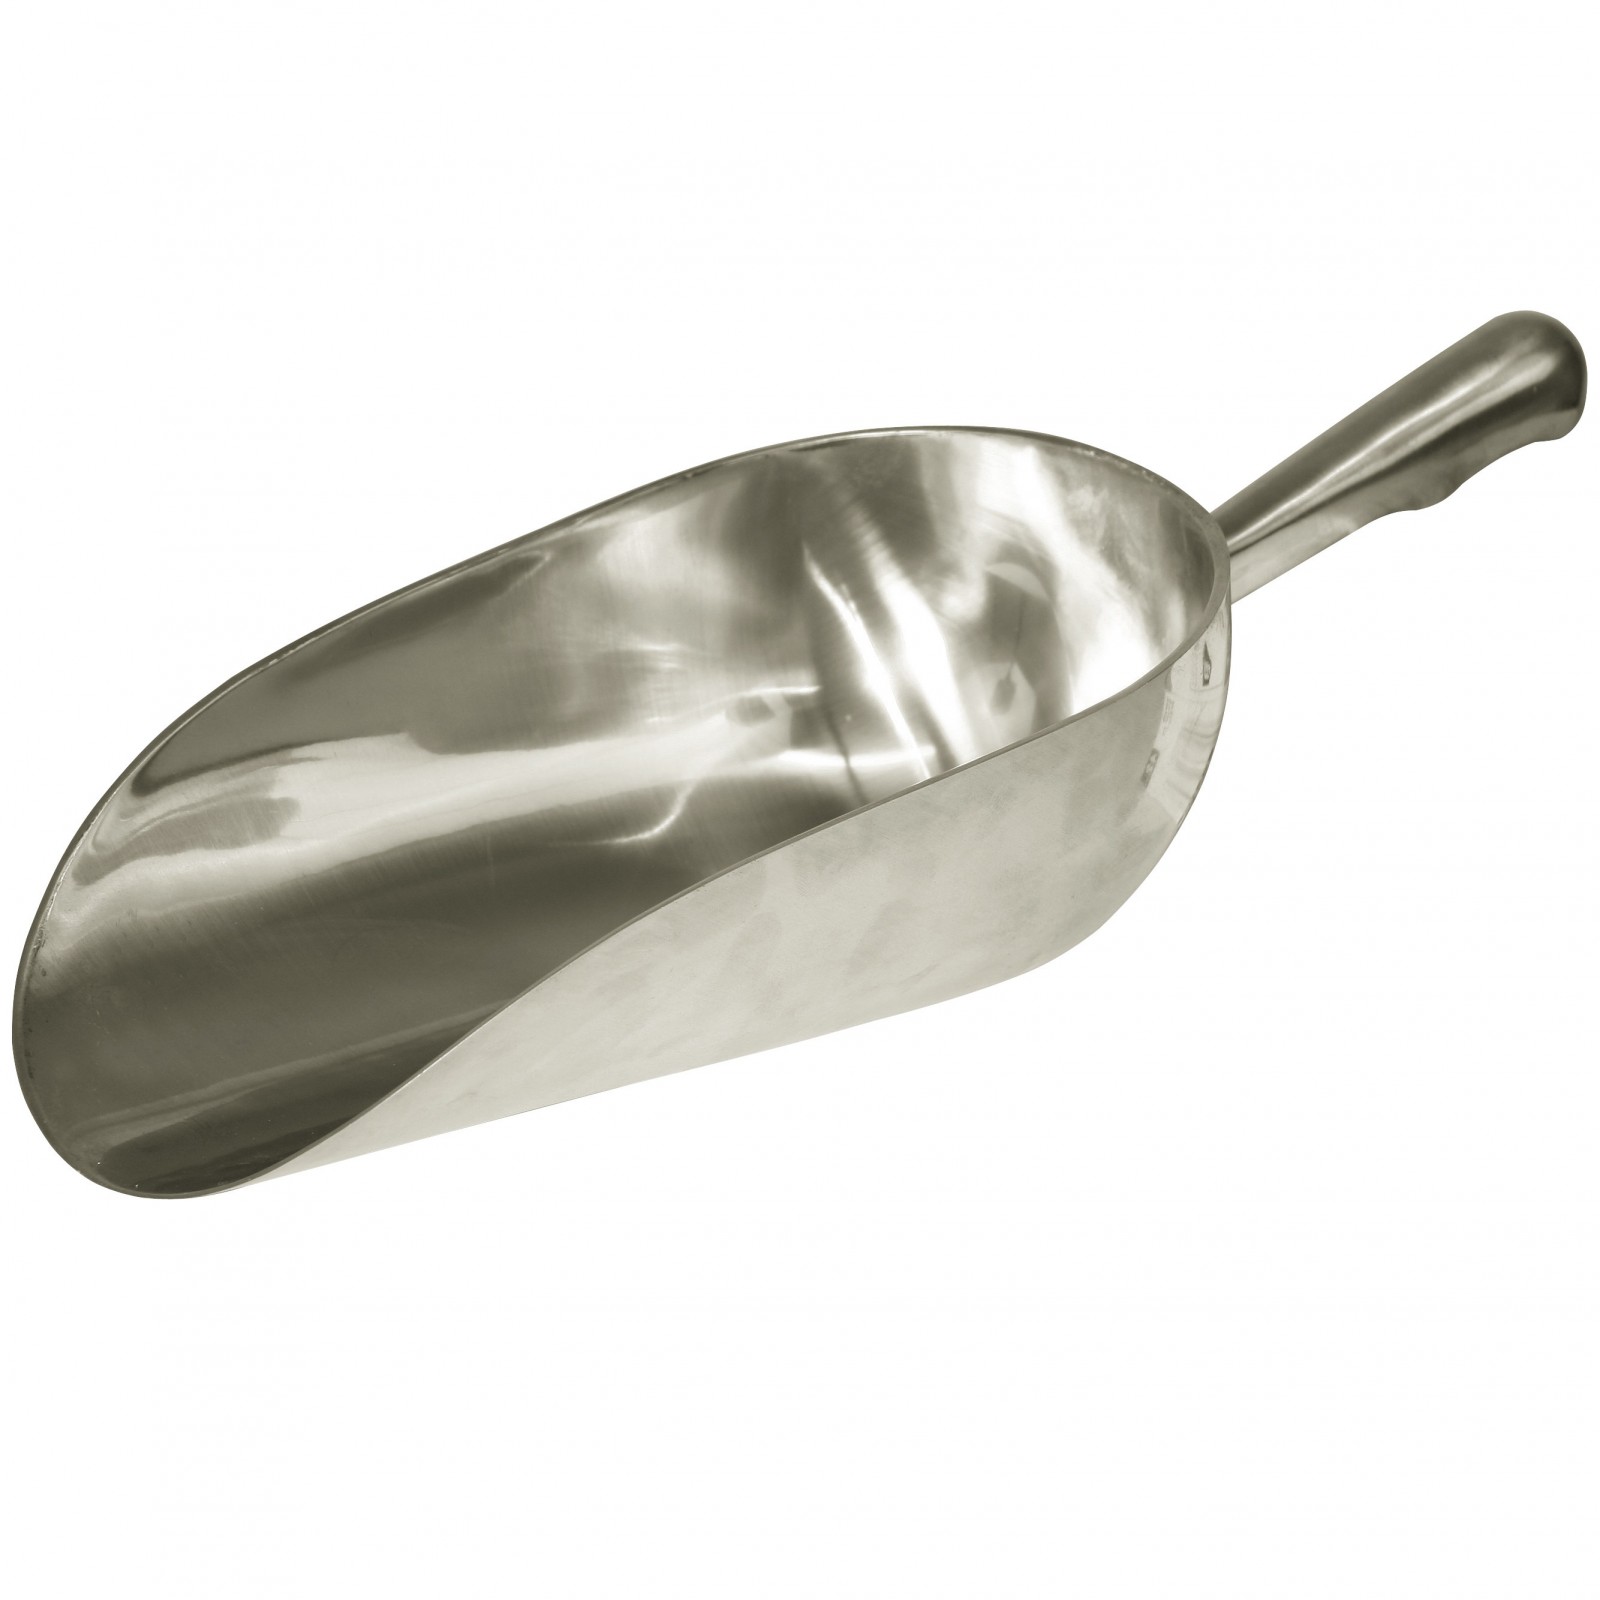 Feed scoop aluminium round 2500 g